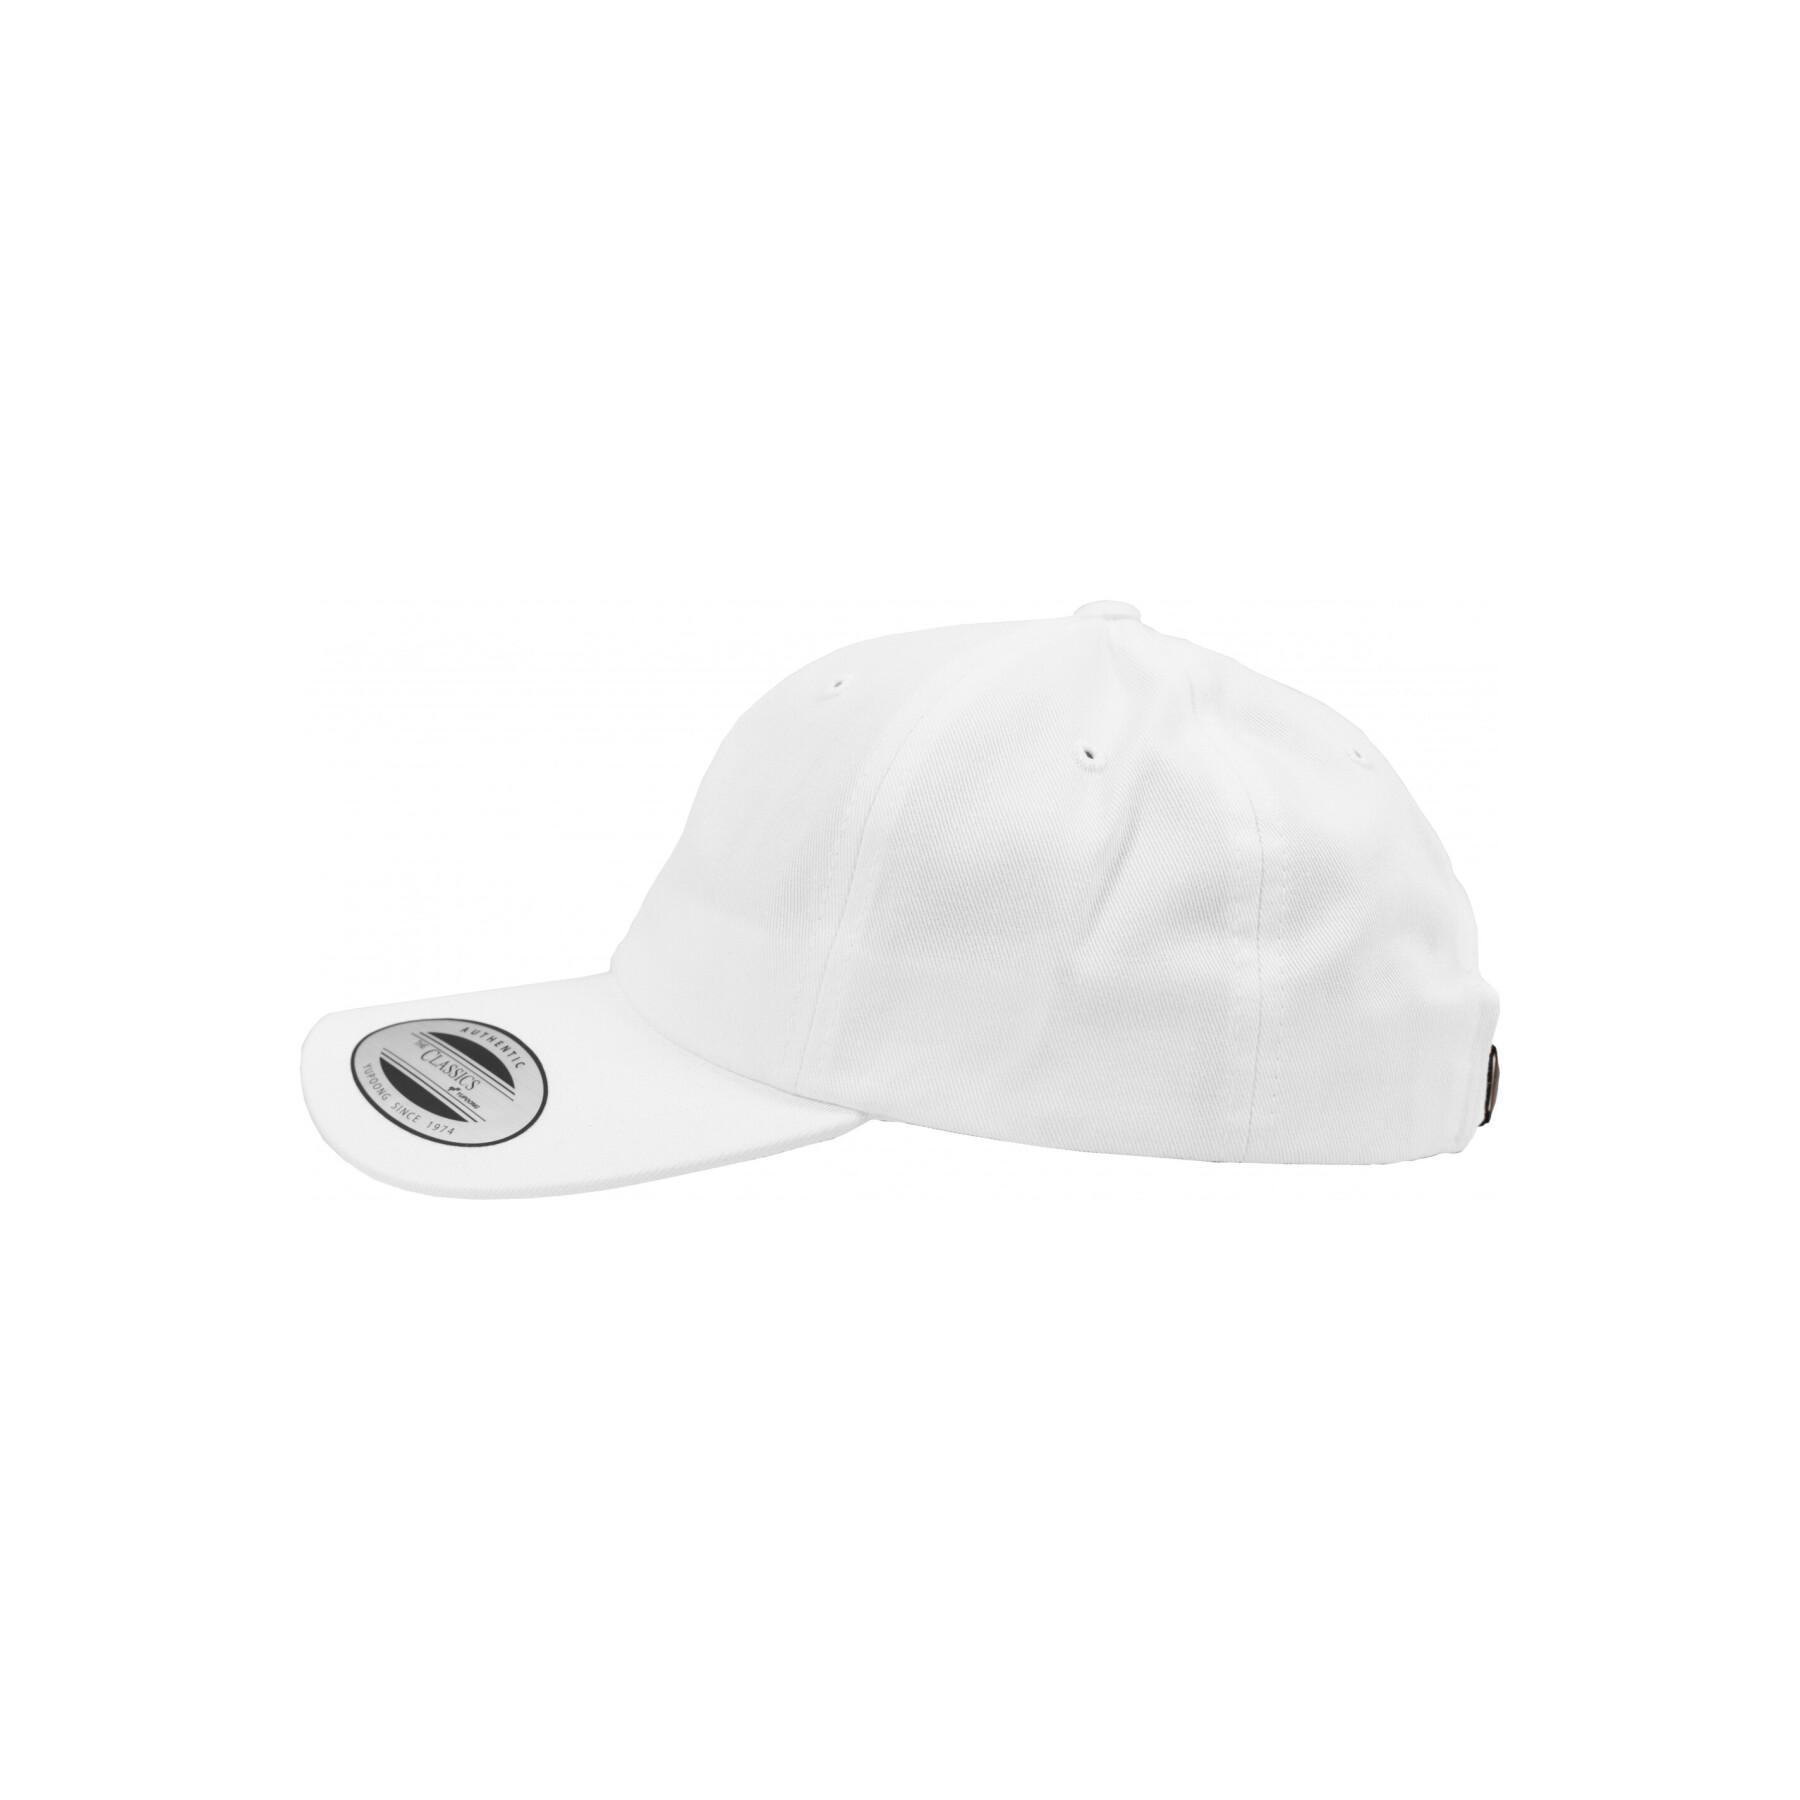 Cotton cap Flexfit